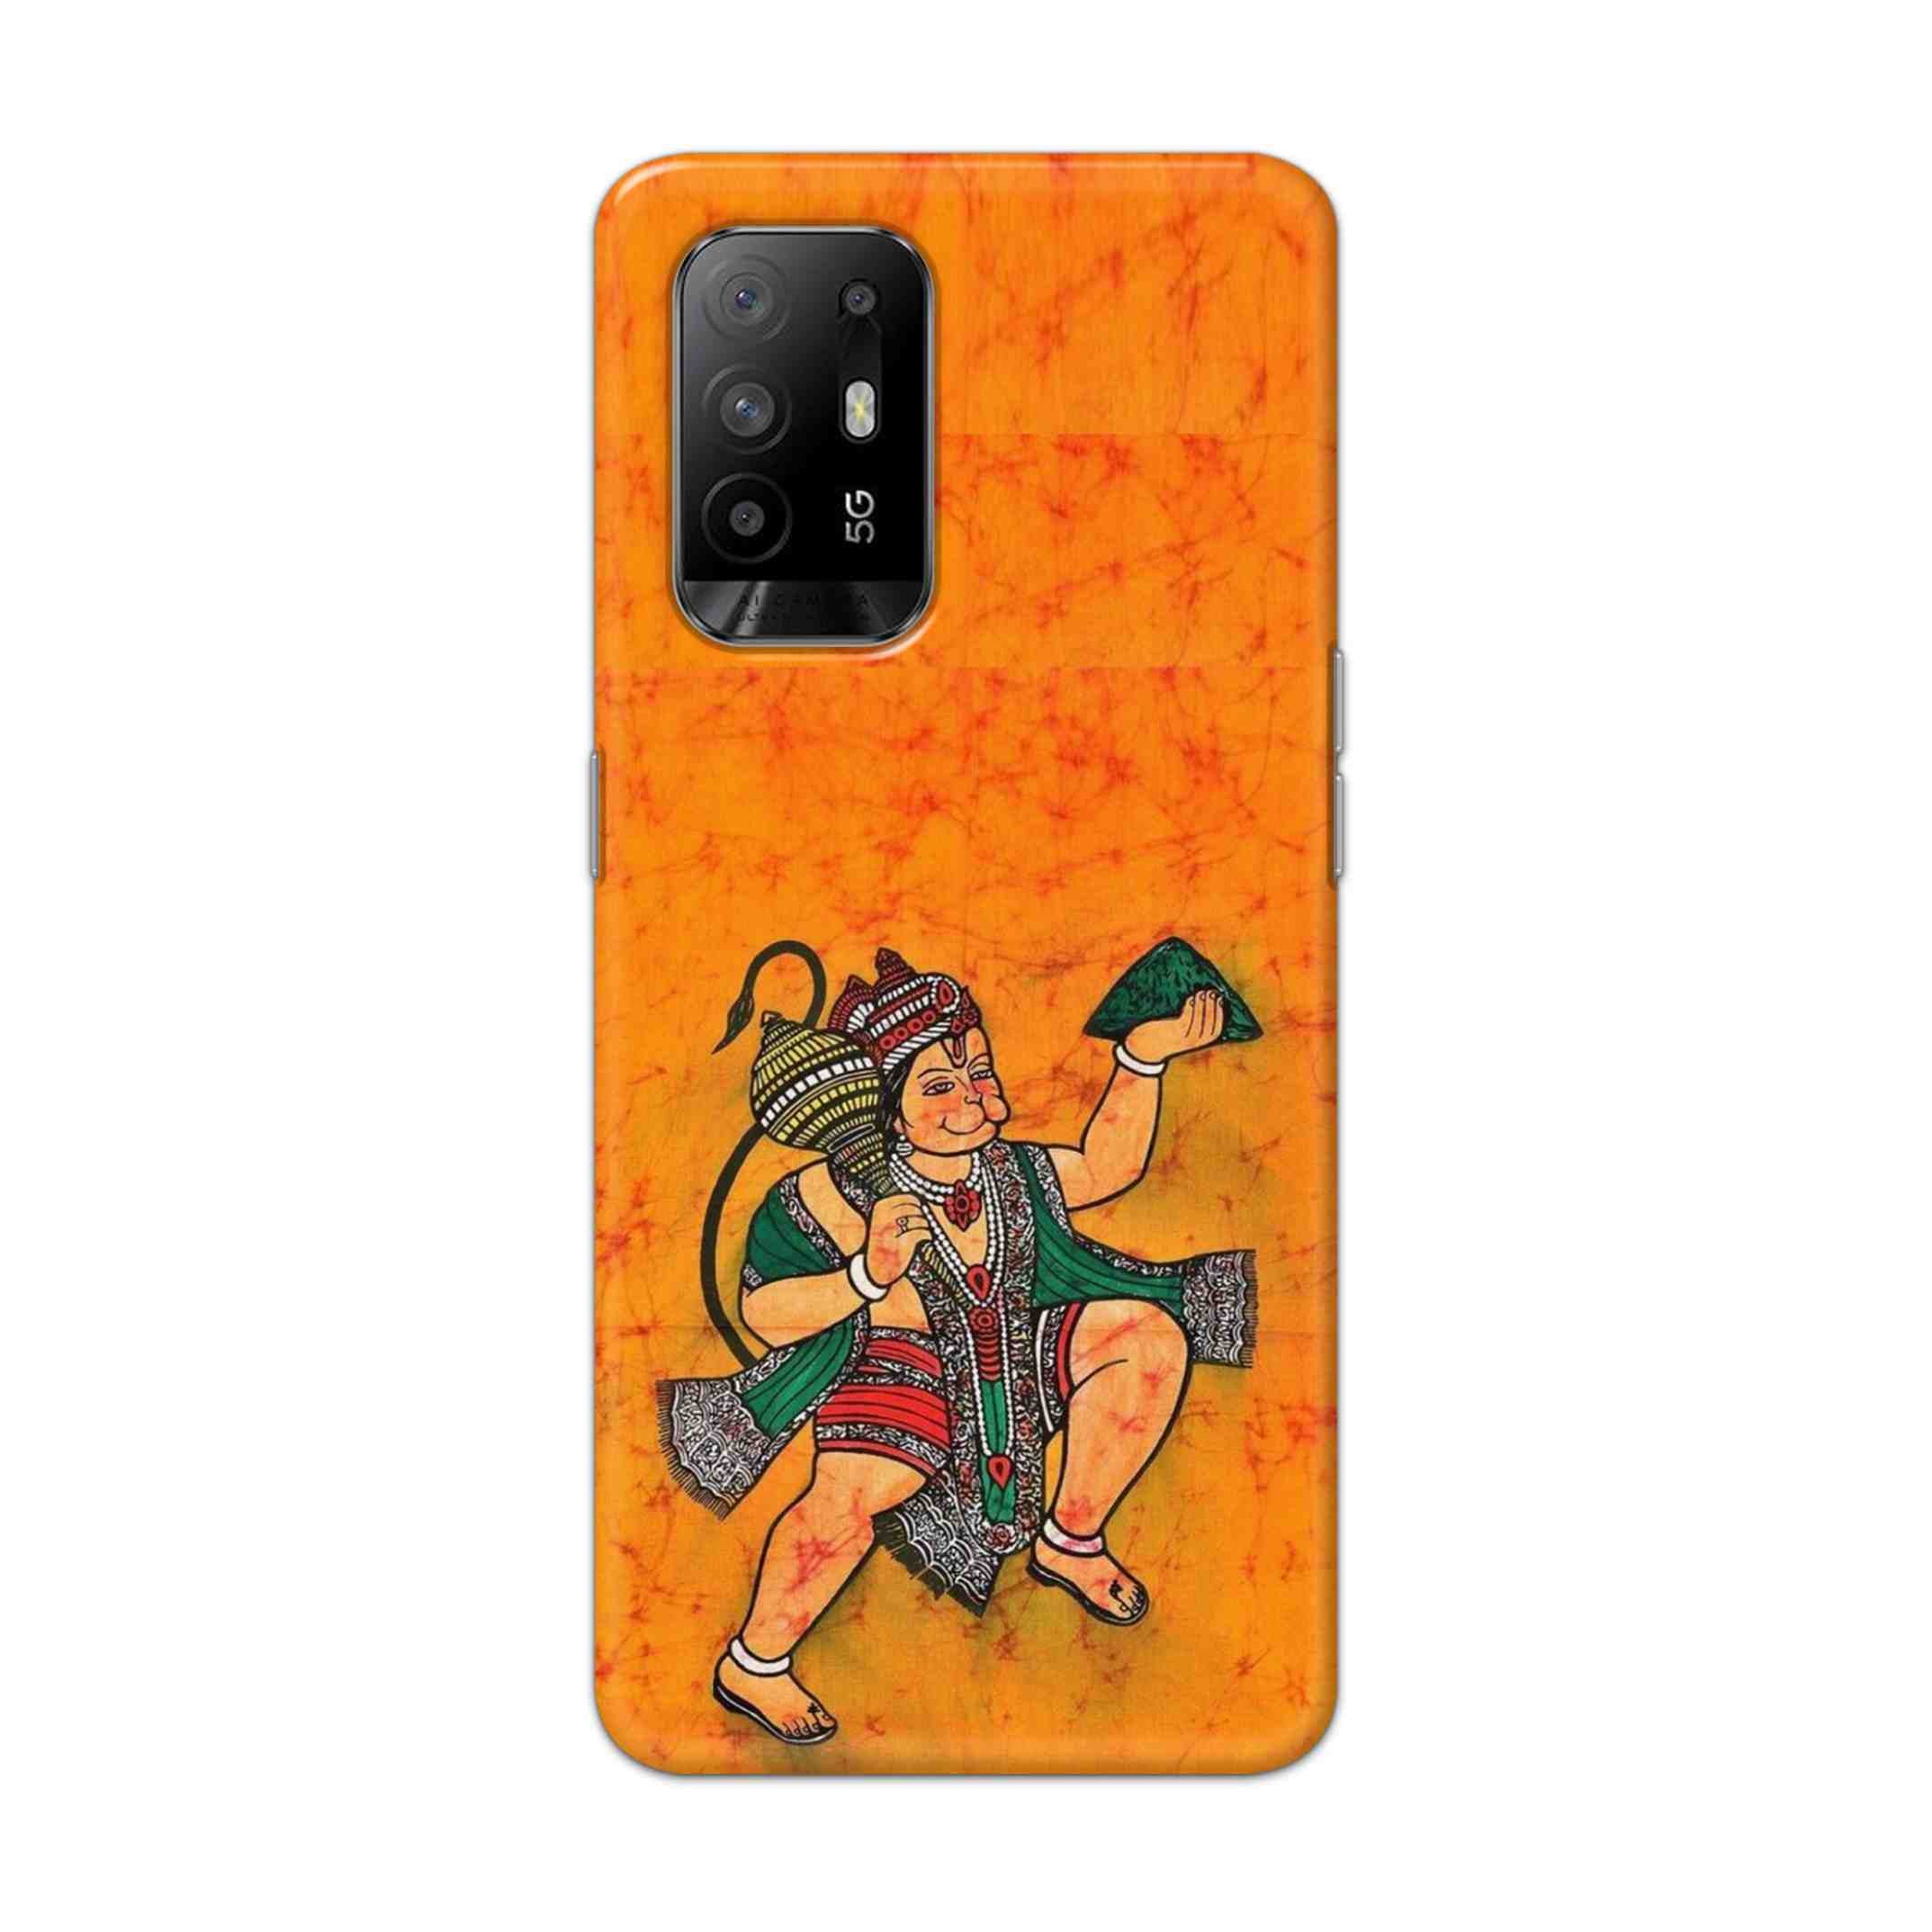 Buy Hanuman Ji Hard Back Mobile Phone Case Cover For Oppo F19 Pro Plus Online